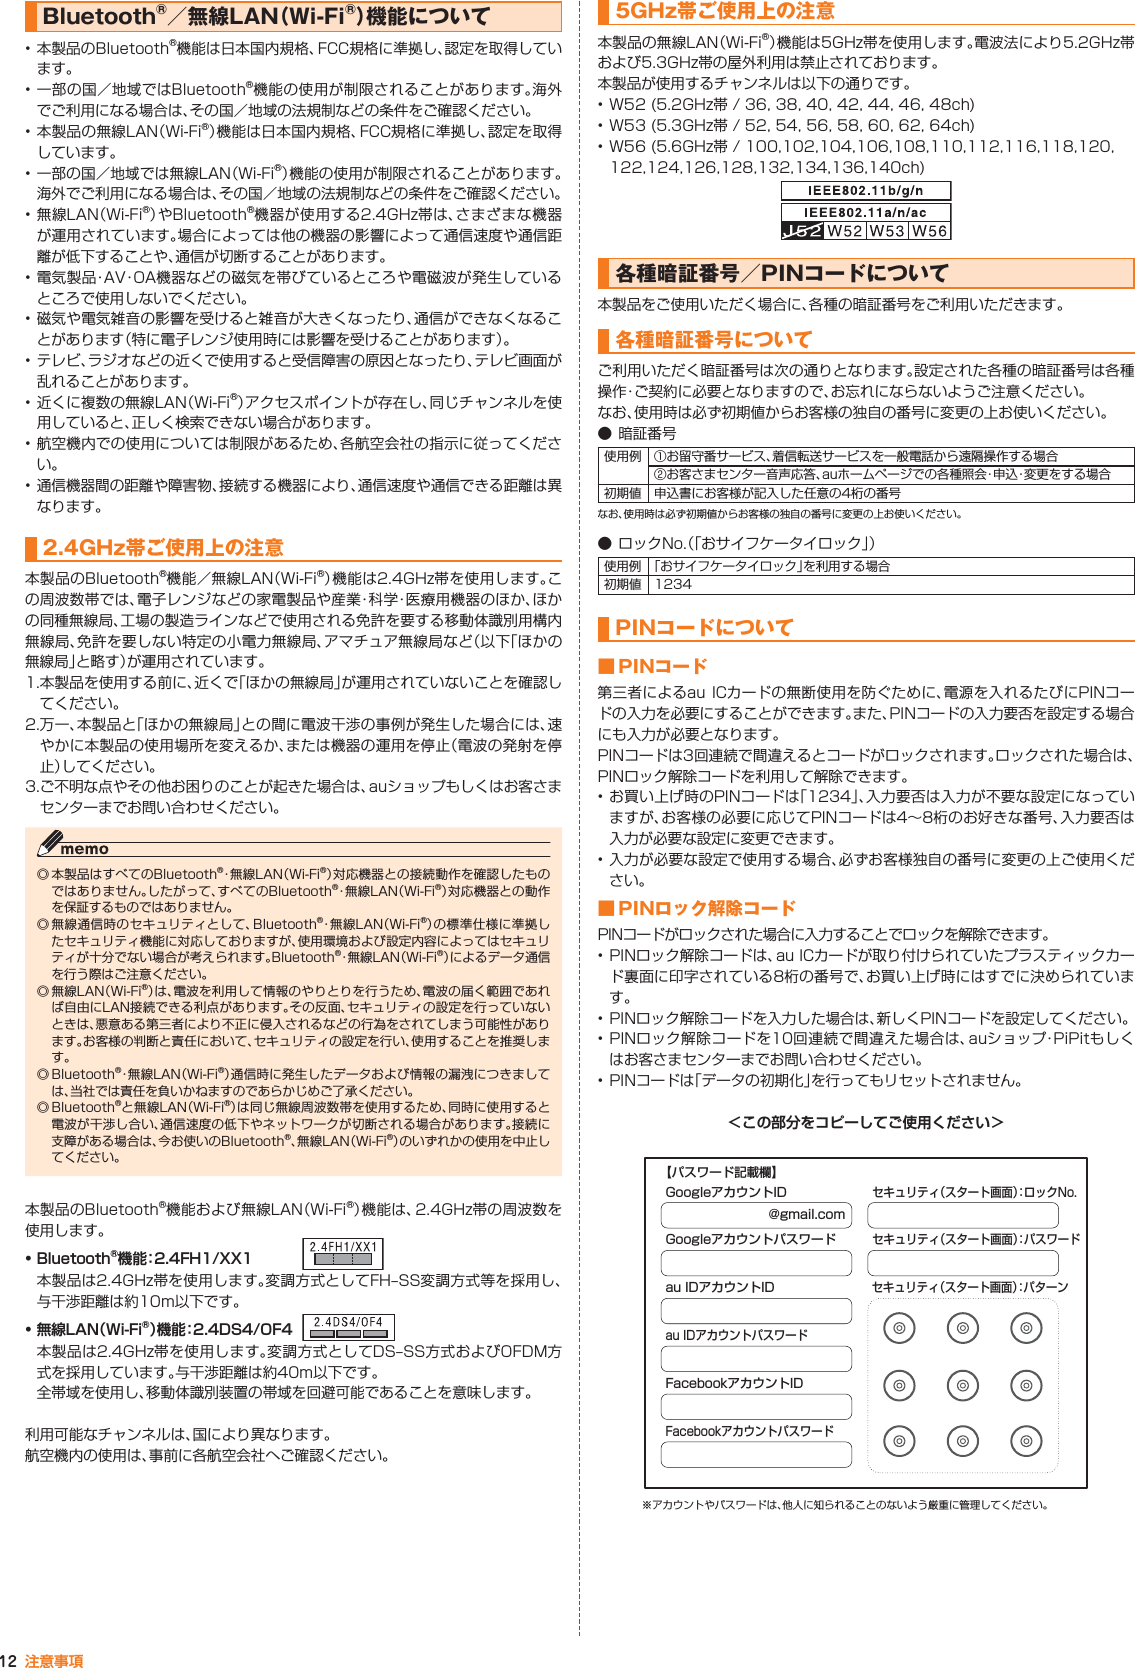 12 注意事項Bluetooth®／無線LAN（Wi-Fi®）機能について • 本製品のBluetooth®機能は日本国内規格、FCC規格に準拠し、認定を取得しています。• 一部の国／地域ではBluetooth®機能の使用が制限されることがあります。海外でご利用になる場合は、その国／地域の法規制などの条件をご確認ください。• 本製品の無線LAN（Wi-Fi®）機能は日本国内規格、FCC規格に準拠し、認定を取得しています。• 一部の国／地域では無線LAN（Wi-Fi®）機能の使用が制限されることがあります。海外でご利用になる場合は、その国／地域の法規制などの条件をご確認ください。•無線LAN（Wi-Fi®）やBluetooth®機器が使用する2.4GHz帯は、さまざまな機器が運用されています。場合によっては他の機器の影響によって通信速度や通信距離が低下することや、通信が切断することがあります。•電気製品・AV・OA機器などの磁気を帯びているところや電磁波が発生しているところで使用しないでください。• 磁気や電気雑音の影響を受けると雑音が大きくなったり、通信ができなくなることがあります（特に電子レンジ使用時には影響を受けることがあります）。• テレビ、ラジオなどの近くで使用すると受信障害の原因となったり、テレビ画面が乱れることがあります。• 近くに複数の無線LAN（Wi-Fi®）アクセスポイントが存在し、同じチャンネルを使用していると、正しく検索できない場合があります。• 航空機内での使用については制限があるため、各航空会社の指示に従ってください。• 通信機器間の距離や障害物、接続する機器により、通信速度や通信できる距離は異なります。2.4GHz帯ご使用上の注意本製品のBluetooth®機能／無線LAN（Wi-Fi®）機能は2.4GHz帯を使用します。この周波数帯では、電子レンジなどの家電製品や産業・科 学・医療用機器のほか、ほかの同種無線局、工場の製造ラインなどで使用される免許を要する移動体識別用構内無線局、免許を要しない特定の小電力無線局、アマチュア無線局など（以下「ほかの無線局」と略す）が運用されています。1. 本製品を使用する前に、近くで「ほかの無線局」が運用されていないことを確認してください。2. 万一、本製品と「ほかの無線局」との間に電波干渉の事例が発生した場合には、速やかに本製品の使用場所を変えるか、または機器の運用を停止（電波の発射を停止）してください。3. ご不明な点やその他お困りのことが起きた場合は、auショップもしくはお客さまセンターまでお問い合わせください。◎ 本製品はすべてのBluetooth®・無線LAN（Wi-Fi®）対応機器との接続動作を確認したものではありません。したがって、すべてのBluetooth®・無 線 L A N（Wi-Fi®）対応機器との動作を保証するものではありません。◎ 無線通信時のセキュリティとして、Bluetooth®・無線LAN（Wi-Fi®）の標準仕様に準拠したセキュリティ機能に対応しておりますが、使用環境および設定内容によってはセキュリティが十分でない場合が考えられます。Bluetooth®・無線LAN（Wi-Fi®）によるデータ通信を行う際はご注意ください。◎ 無線LAN（Wi-Fi®）は、電波を利用して情報のやりとりを行うため、電波の届く範囲であれば自由にLAN接続できる利点があります。その反面、セキュリティの設定を行っていないときは、悪意ある第三者により不正に侵入されるなどの行為をされてしまう可能性があります。お客様の判断と責任において、セキュリティの設定を行い、使用することを推奨します。◎ Bluetooth®・無線LAN（Wi-Fi®）通信時に発生したデータおよび情報の漏洩につきましては、当社では責任を負いかねますのであらかじめご了承ください。◎ Bluetooth®と無線LAN（Wi-Fi®）は同じ無線周波数帯を使用するため、同時に使用すると電波が干渉し合い、通信速度の低下やネットワークが切断される場合があります。接続に支障がある場合は、今お使いのBluetooth®、無線LAN（Wi-Fi®）のいずれかの使用を中止してください。本製品のBluetooth®機能および無線LAN（Wi-Fi®）機能は、2.4GHz帯の周波数を使用します。• Bluetooth®機能：2.4FH1/XX1本製品は2.4GHz帯を使用します。変調方式としてFH‒SS変調方式等を採用し、与干渉距離は約10m以下です。• 無線LAN（Wi-Fi®）機能：2.4DS4/OF4本製品は2.4GHz帯を使用します。変調方式としてDS‒SS方式およびOFDM方式を採用しています。与干渉距離は約40m以下です。全帯域を使用し、移動体識別装置の帯域を回避可能であることを意味します。利用可能なチャンネルは、国により異なります。航空機内の使用は、事前に各航空会社へご確認ください。5GHz帯ご使用上の注意本製品の無線LAN（Wi-Fi®）機能は5GHz帯を使用します。電波法により5.2GHz帯および5.3GHz帯の屋外利用は禁止されております。本製品が使用するチャンネルは以下の通りです。• W52 (5.2GHz帯 / 36, 38, 40, 42, 44, 46, 48ch)• W53 (5.3GHz帯 / 52, 54, 56, 58, 60, 62, 64ch)• W56 (5.6GHz帯 / 100,102,104,106,108,110,112,116,118,120,122,124,126,128,132,134,136,140ch)各種暗証番号／PINコードについて本製品をご使用いただく場合に、各種の暗証番号をご利用いただきます。各種暗証番号についてご利用いただく暗証番号は次の通りとなります。設定された各種の暗証番号は各種操作・ご契約に必要となりますので、お忘れにならないようご注意ください。なお、使用時は必ず初期値からお客様の独自の番号に変更の上お使いください。● 暗証番号使用例 ① お留守番サービス、着信転送サービスを一般電話から遠隔操作する場合② お客さまセンター音声応答、auホームページでの各種照会・申込・変更をする場合初期値 申込書にお客様が記入した任意の4桁の番号なお、使用時は必ず初期値からお客様の独自の番号に変更の上お使いください。● ロックNo.（「おサイフケータイロック」）使用例 「おサイフケータイロック」を利用する場合初期値 1234PINコードについて■ PINコード第三者によるau ICカードの無断使用を防ぐために、電源を入れるたびにPINコードの入力を必要にすることができます。また、PINコードの入力要否を設定する場合にも入力が必要となります。PINコードは3回連続で間違えるとコードがロックされます。ロックされた場合は、PINロック解除コードを利用して解除できます。•お買い上げ時のPINコードは「1234」、入力要否は入力が不要な設定になっていますが、お客様の必要に応じてPINコードは4∼8桁のお好きな番号、入力要否は入力が必要な設定に変更できます。• 入力が必要な設定で使用する場合、必ずお客様独自の番号に変更の上ご使用ください。■ PINロック解除コードPINコードがロックされた場合に入力することでロックを解除できます。• PINロック解除コードは、au ICカードが取り付けられていたプラスティックカード裏面に印字されている8桁の番号で、お買い上げ時にはすでに決められています。• PINロック解除コードを入力した場合は、新しくPINコードを設定してください。• PINロック解除コードを10回連続で間違えた場合は、auショップ・PiPitもしくはお客さまセンターまでお問い合わせください。• PINコードは「データの初期化」を行ってもリセットされません。＜この部分をコピーしてご使用ください＞@gmail.comGoogleアカウントIDGoogleアカウントパスワードau IDアカウントIDセキュリティ（スタート画面）：パターンau IDアカウントパスワードFacebookアカウントIDFacebookアカウントパスワードセキュリティ（スタート画面）：ロックNo.セキュリティ（スタート画面）：パスワード【パスワード記載欄】※アカウントやパスワードは、他人に知られることのないよう厳重に管理してください。